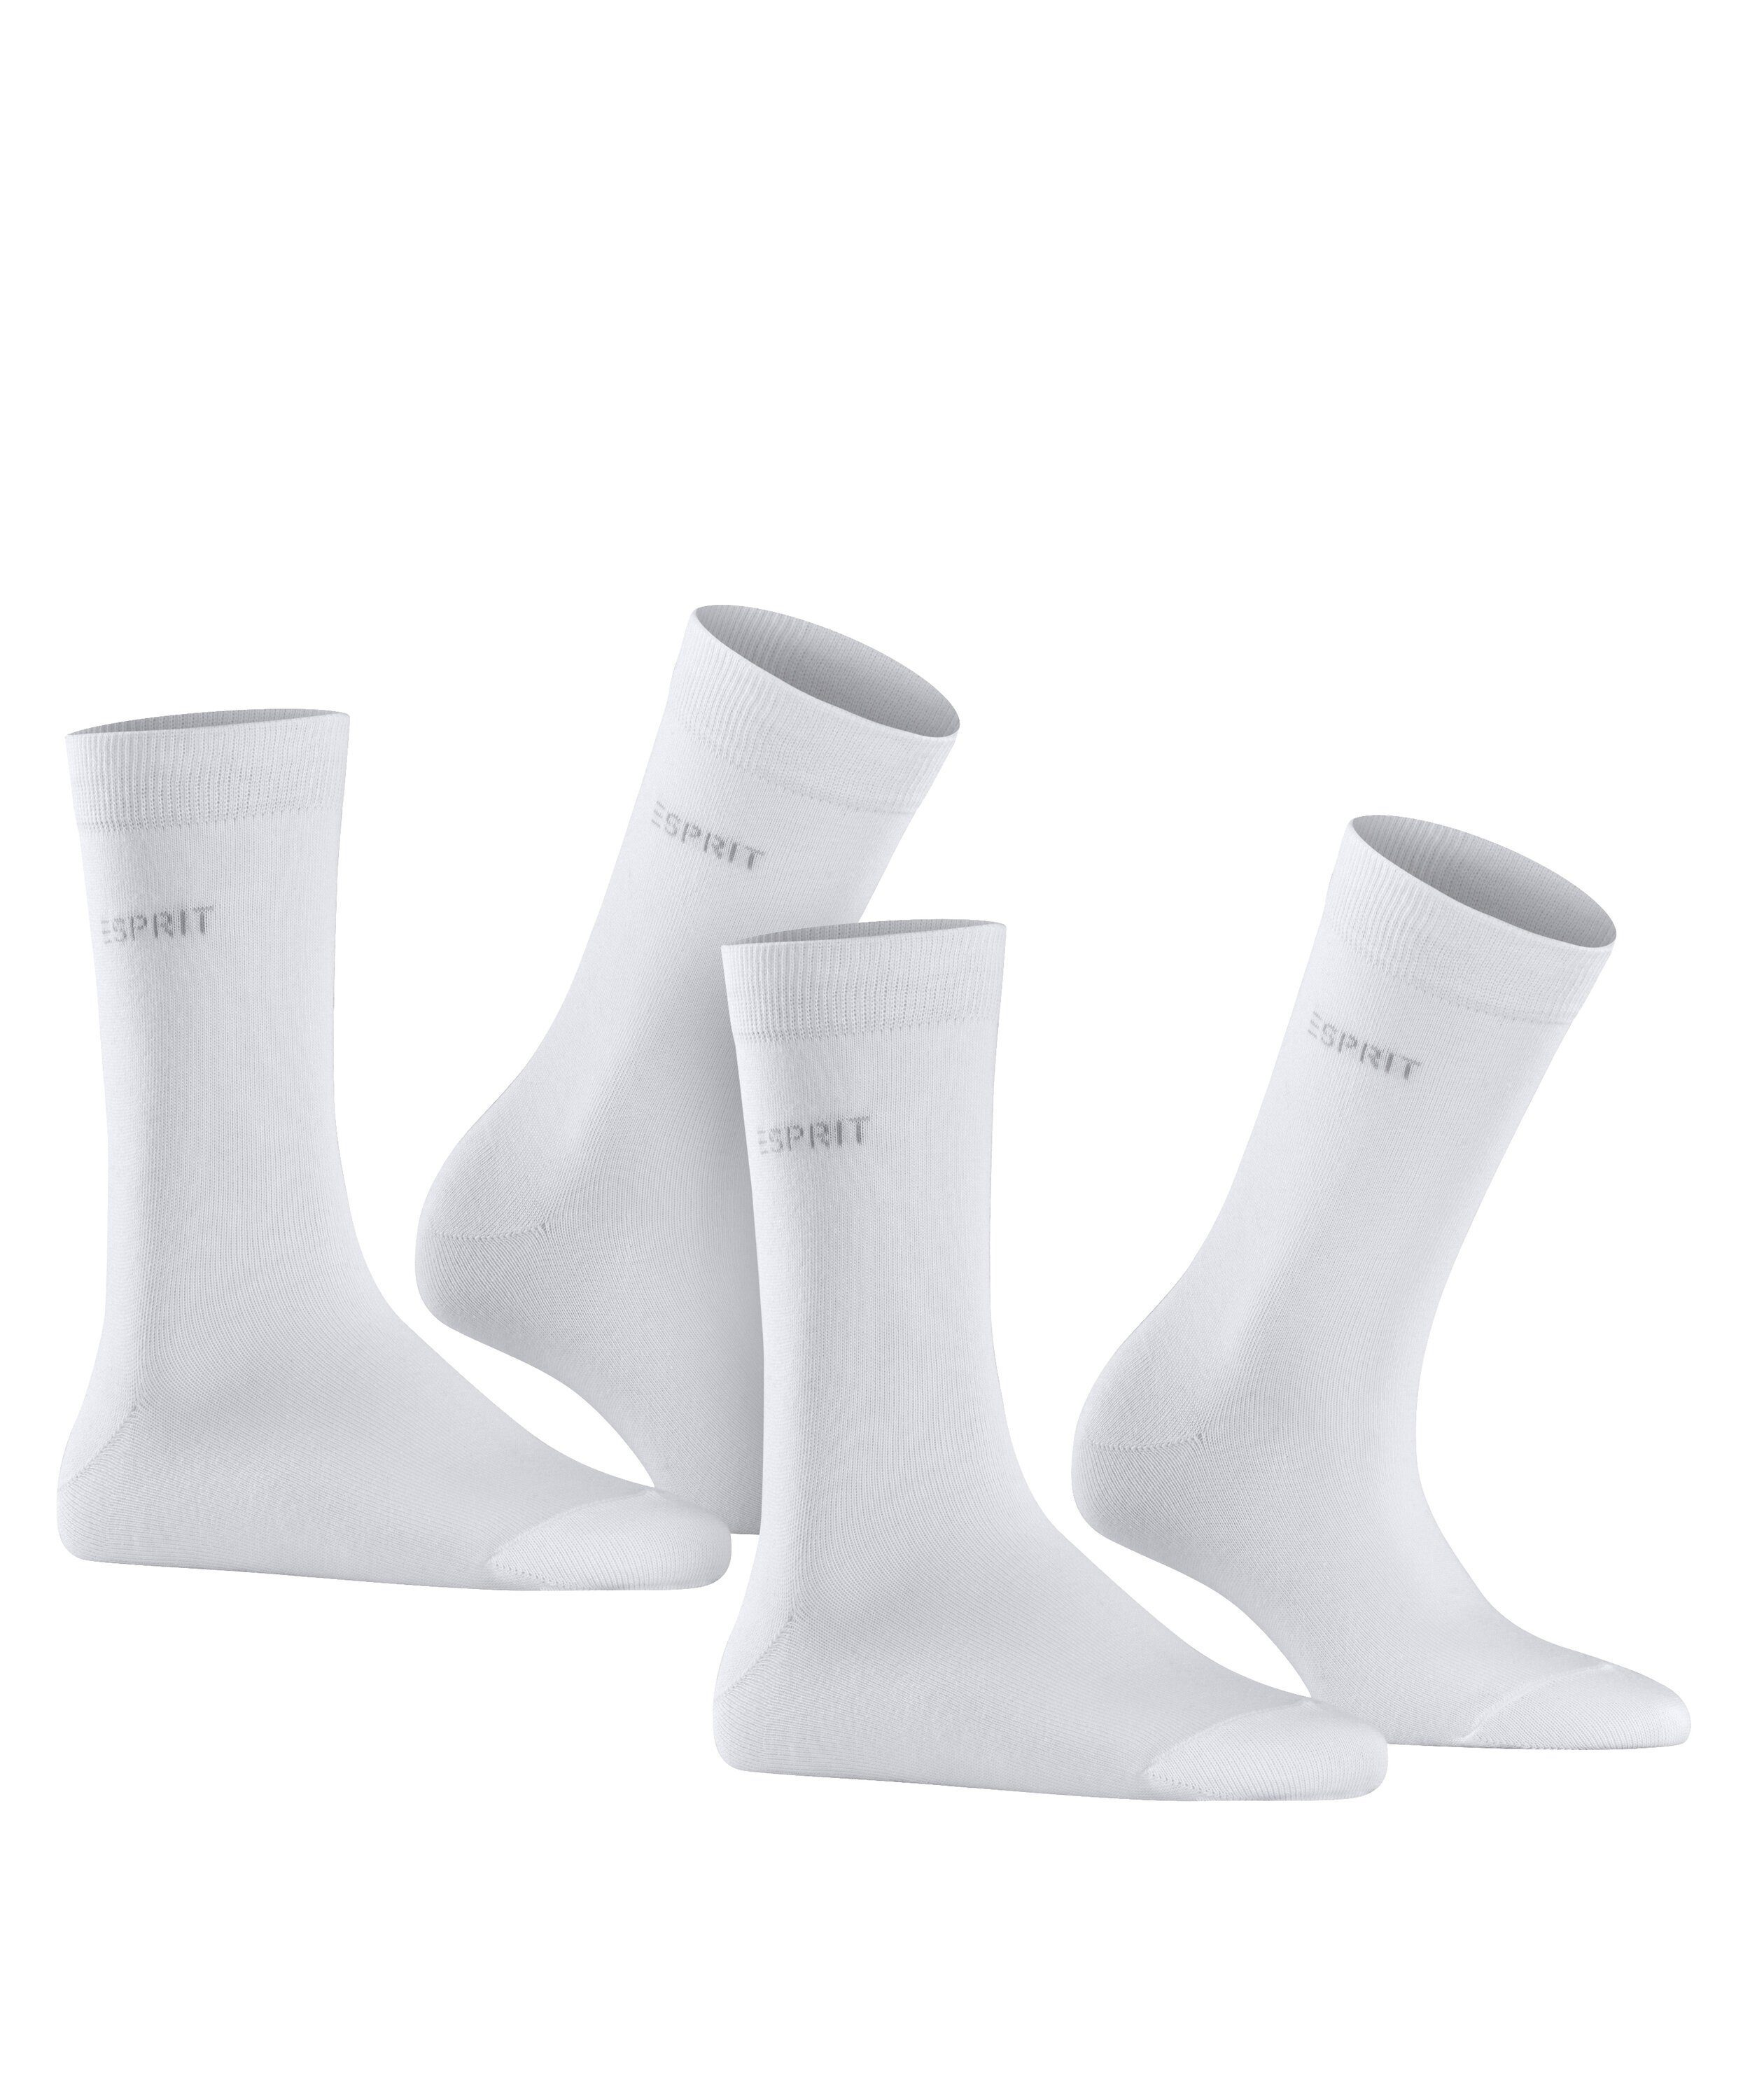 Esprit (2000) Uni white (2-Paar) 2-Pack Socken